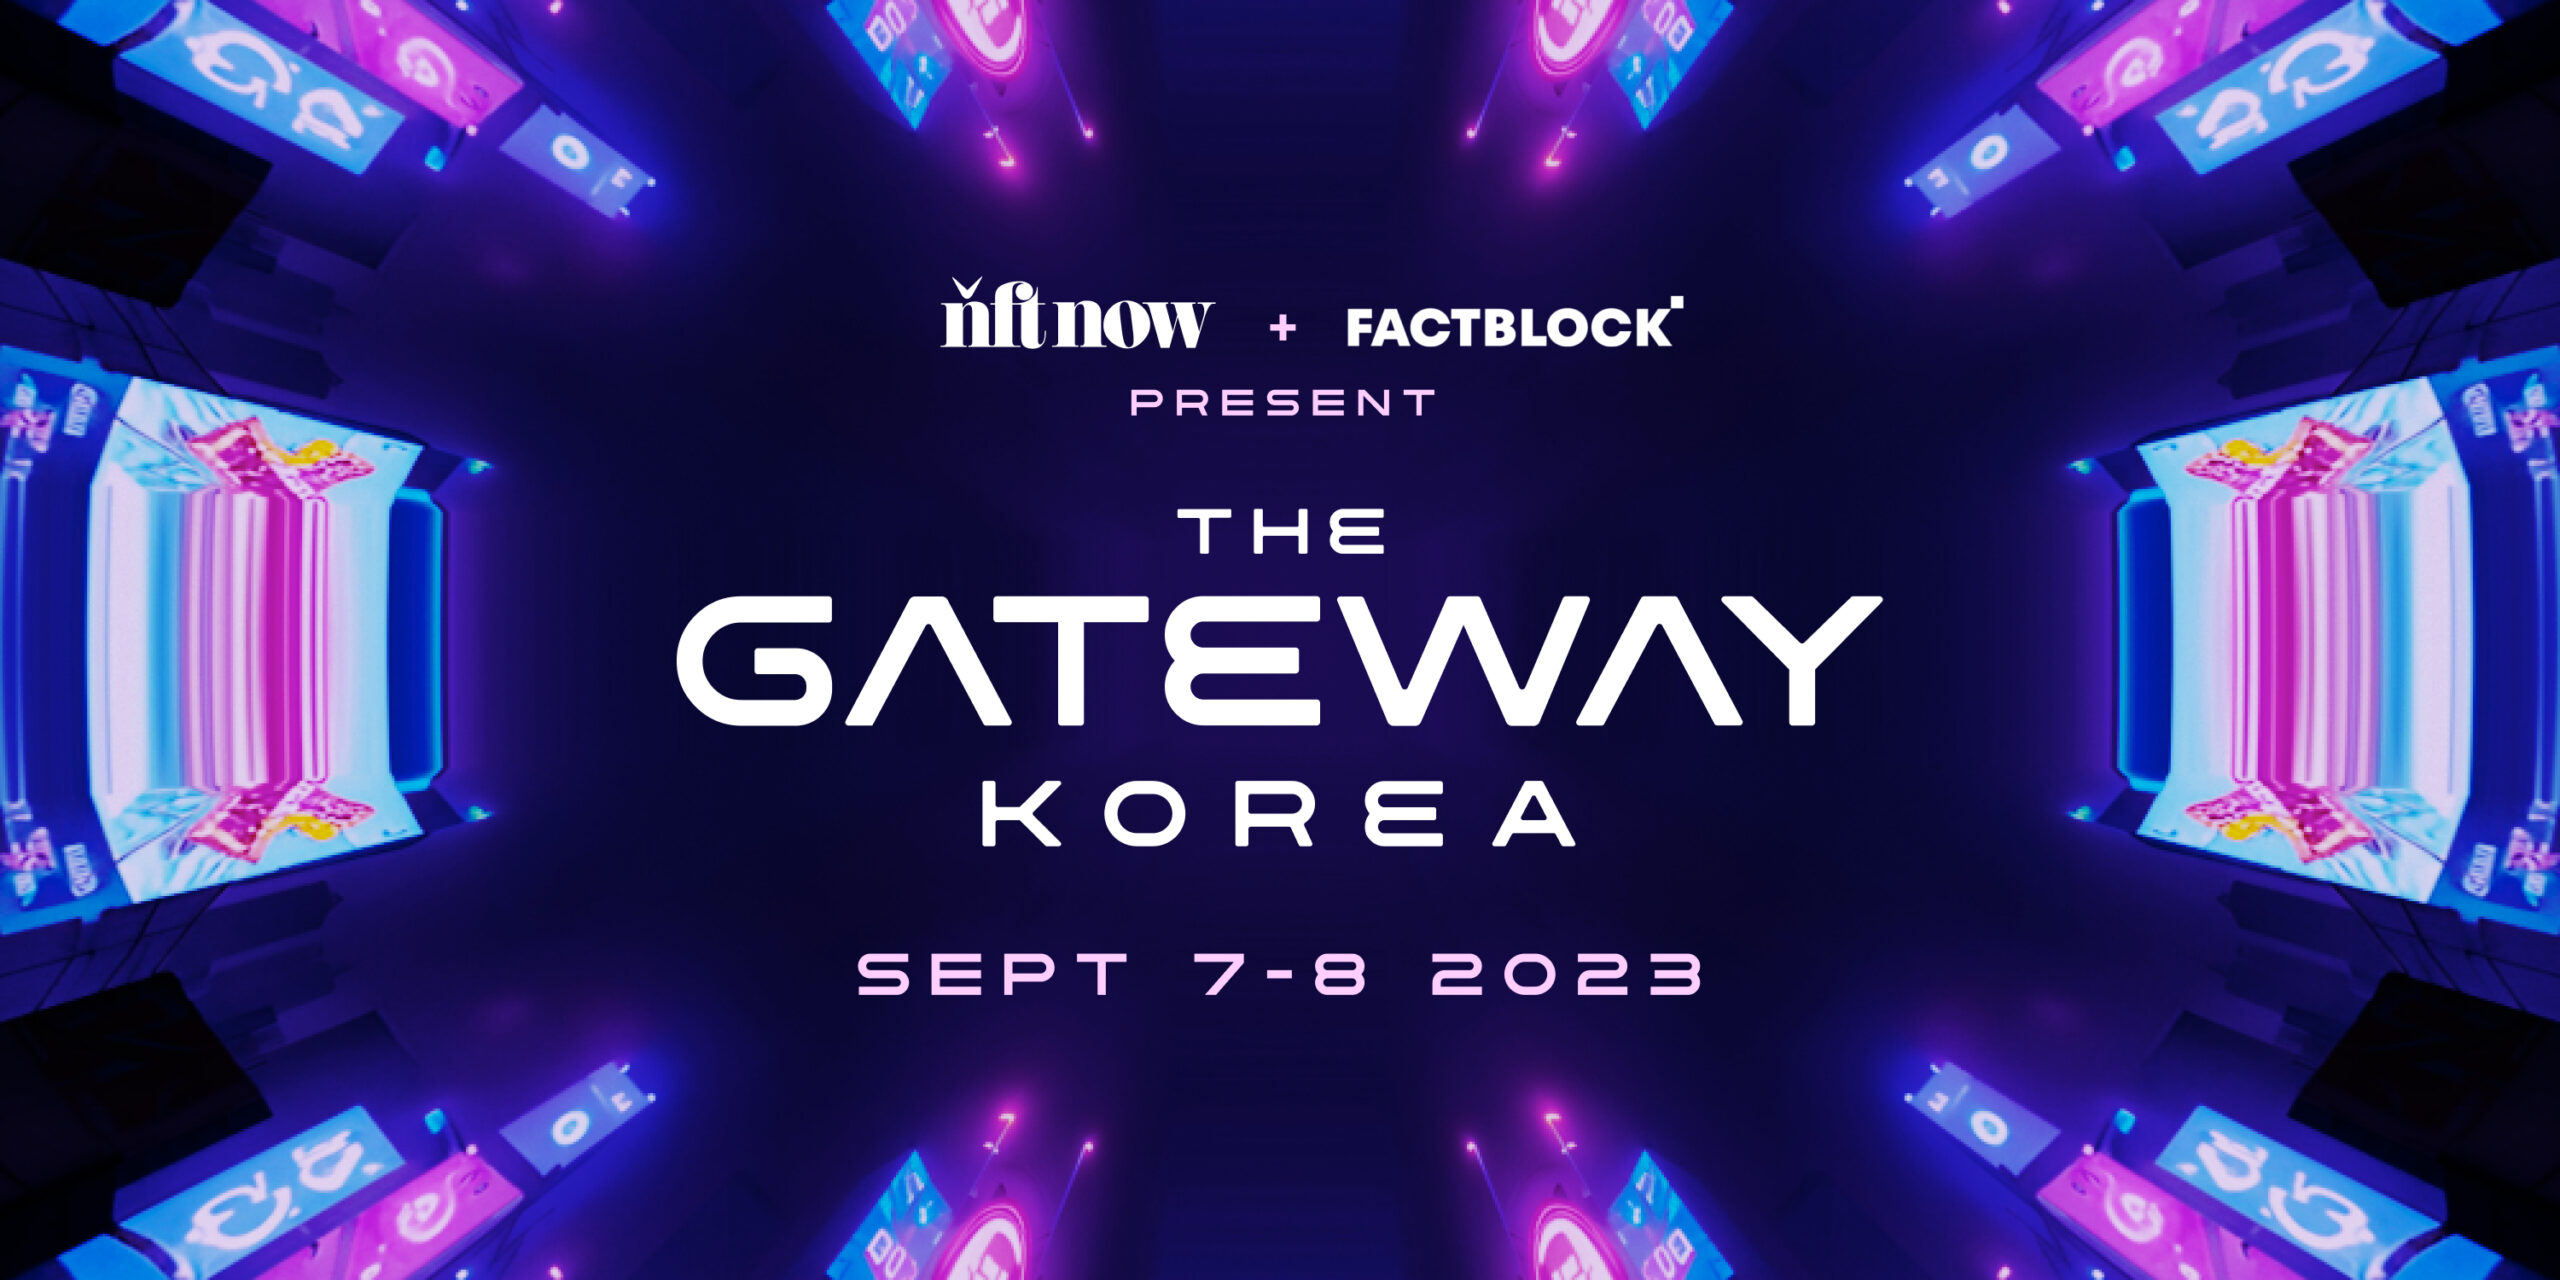 Korea’ at Korea Blockchain Week